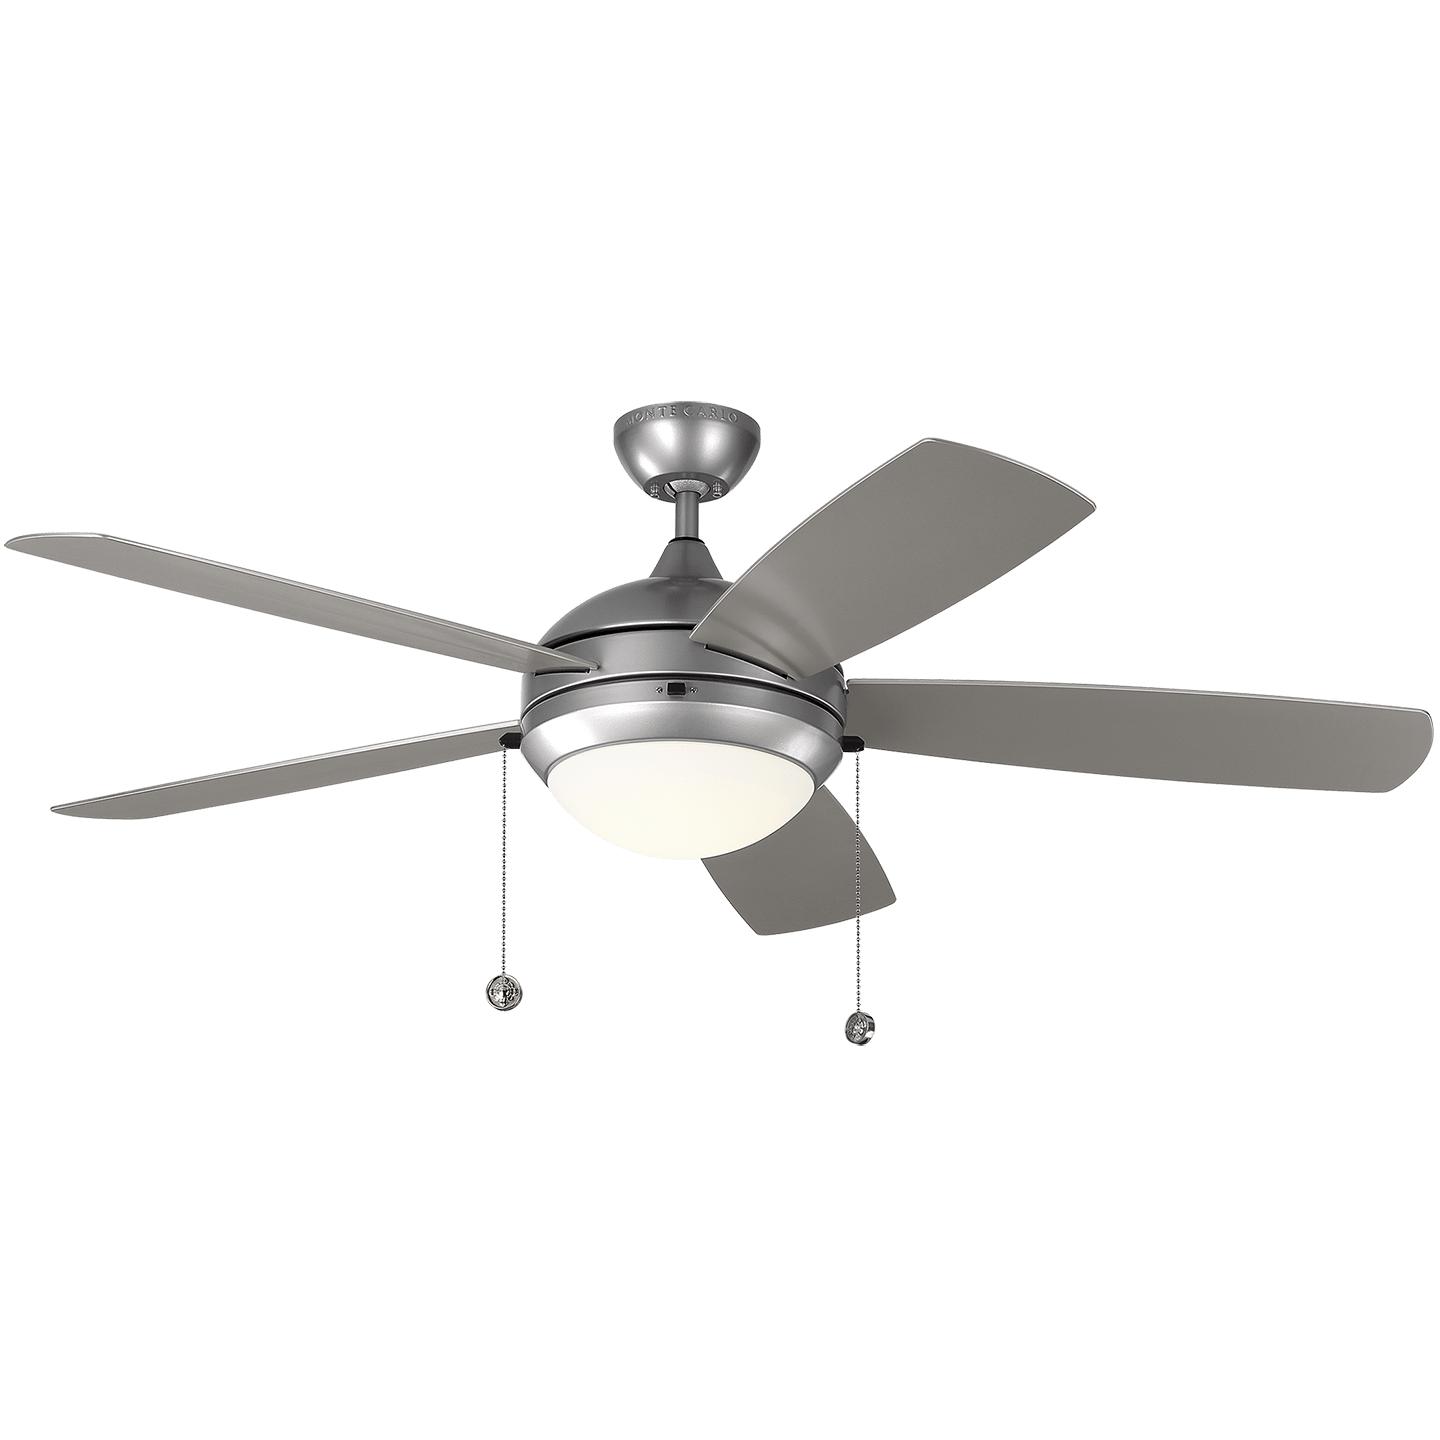 Купить Потолочный вентилятор Discus 52" LED Outdoor Ceiling Fan в интернет-магазине roooms.ru